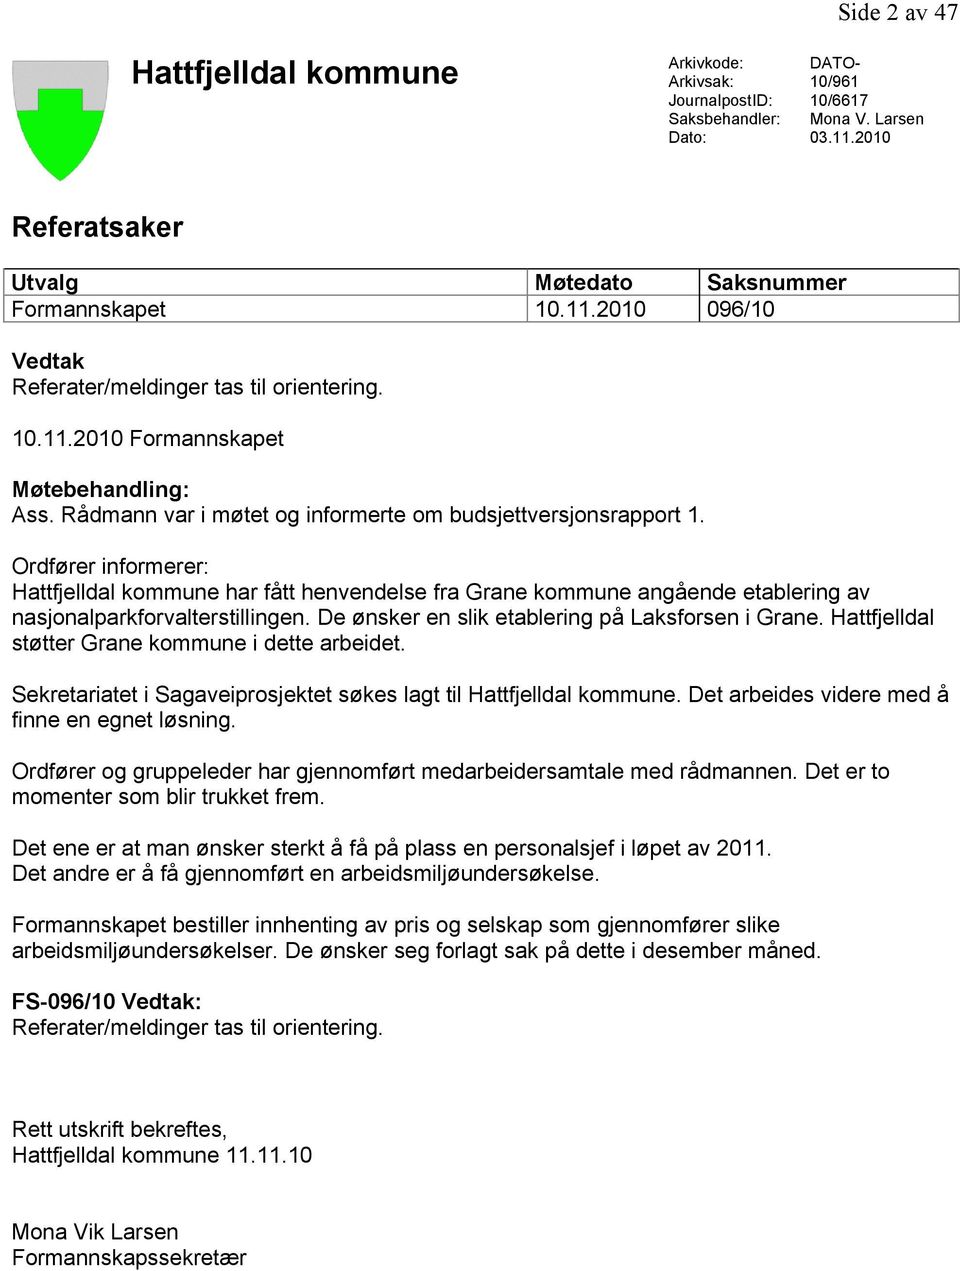 Ordfører informerer: Hattfjelldal kommune har fått henvendelse fra Grane kommune angående etablering av nasjonalparkforvalterstillingen. De ønsker en slik etablering på Laksforsen i Grane.